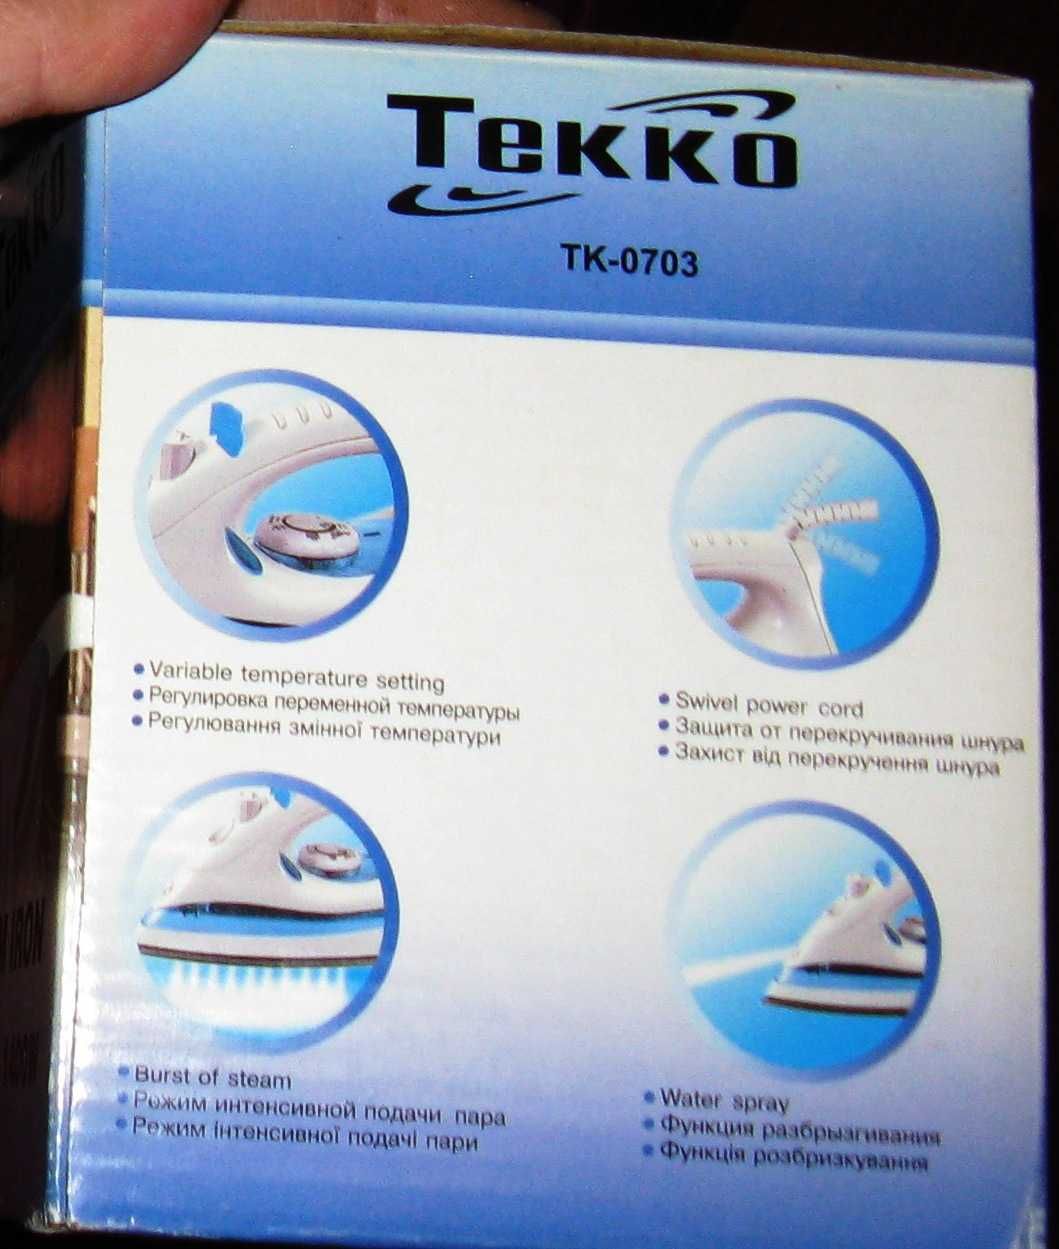 Утюг tekko паровой новый